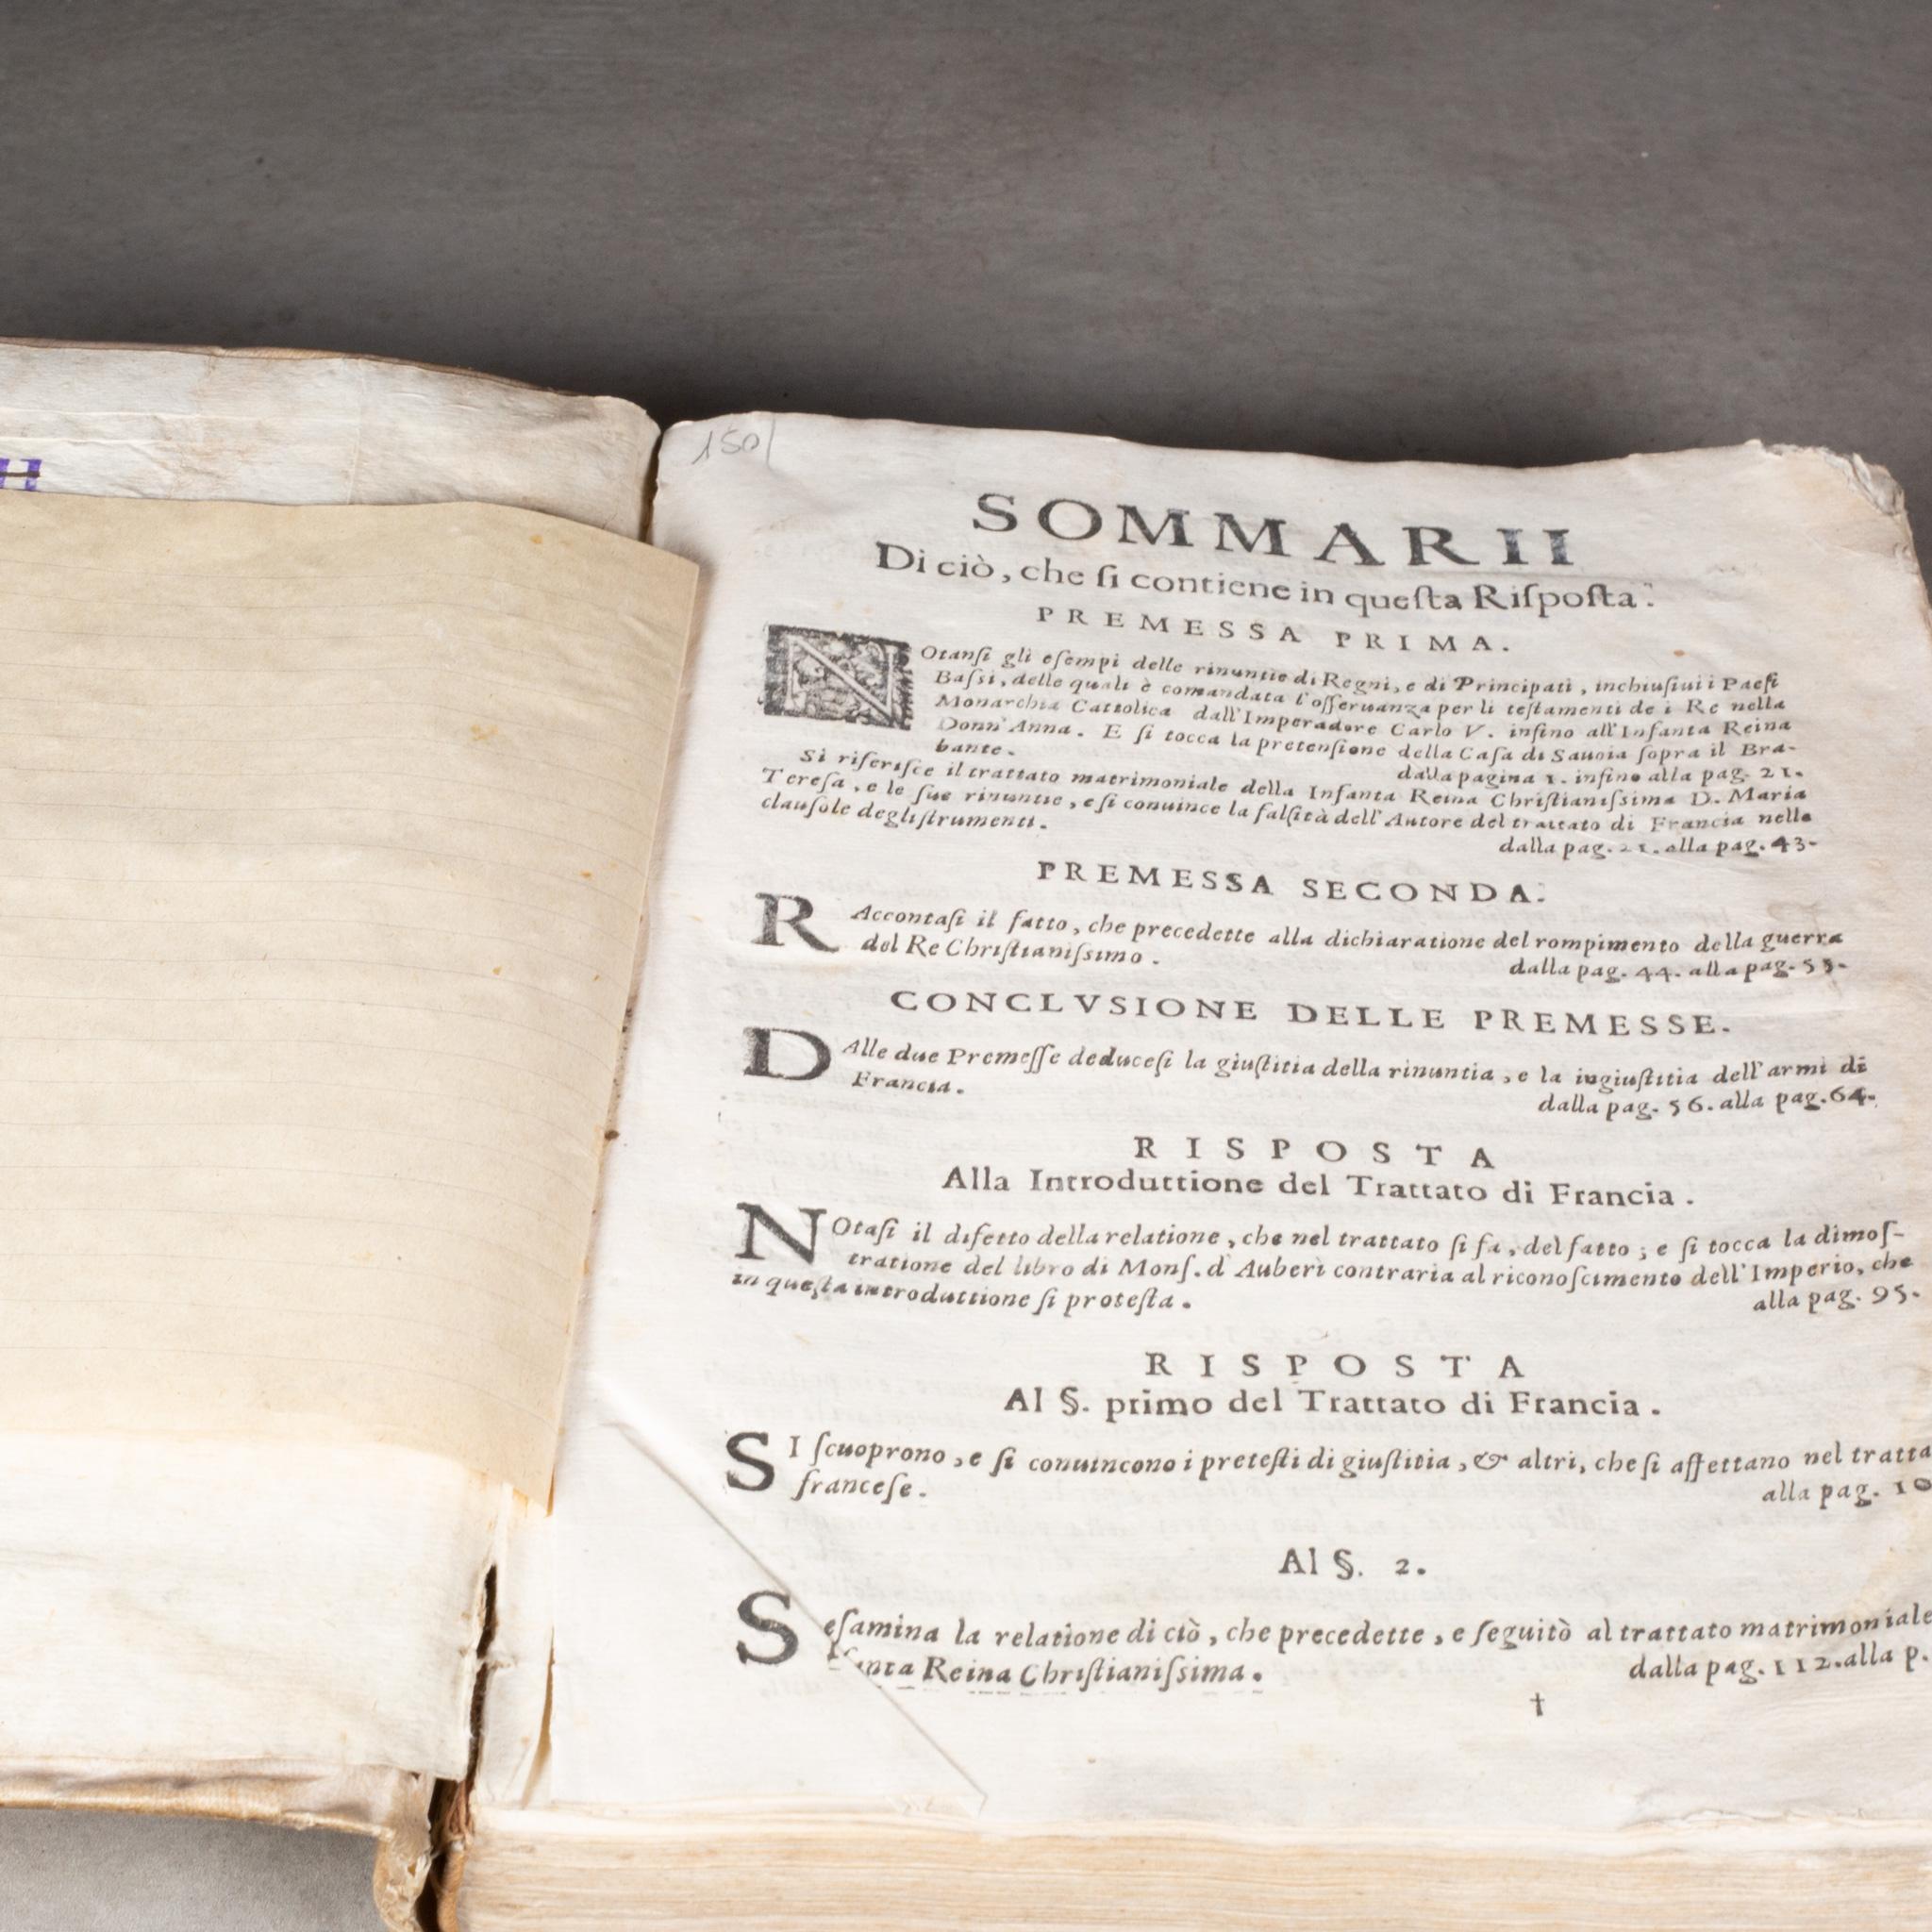 ÜBER

Ein Buch aus dem 17. Jahrhundert. Pg Einband aus Vellum, Seiten aus Pergamentpapier in lateinischer Sprache. Enthält eine beigefügte handschriftliche Notiz, in der das Buch mit einem Datum von 1667 beschrieben wird. Diese Note ist ebenfalls